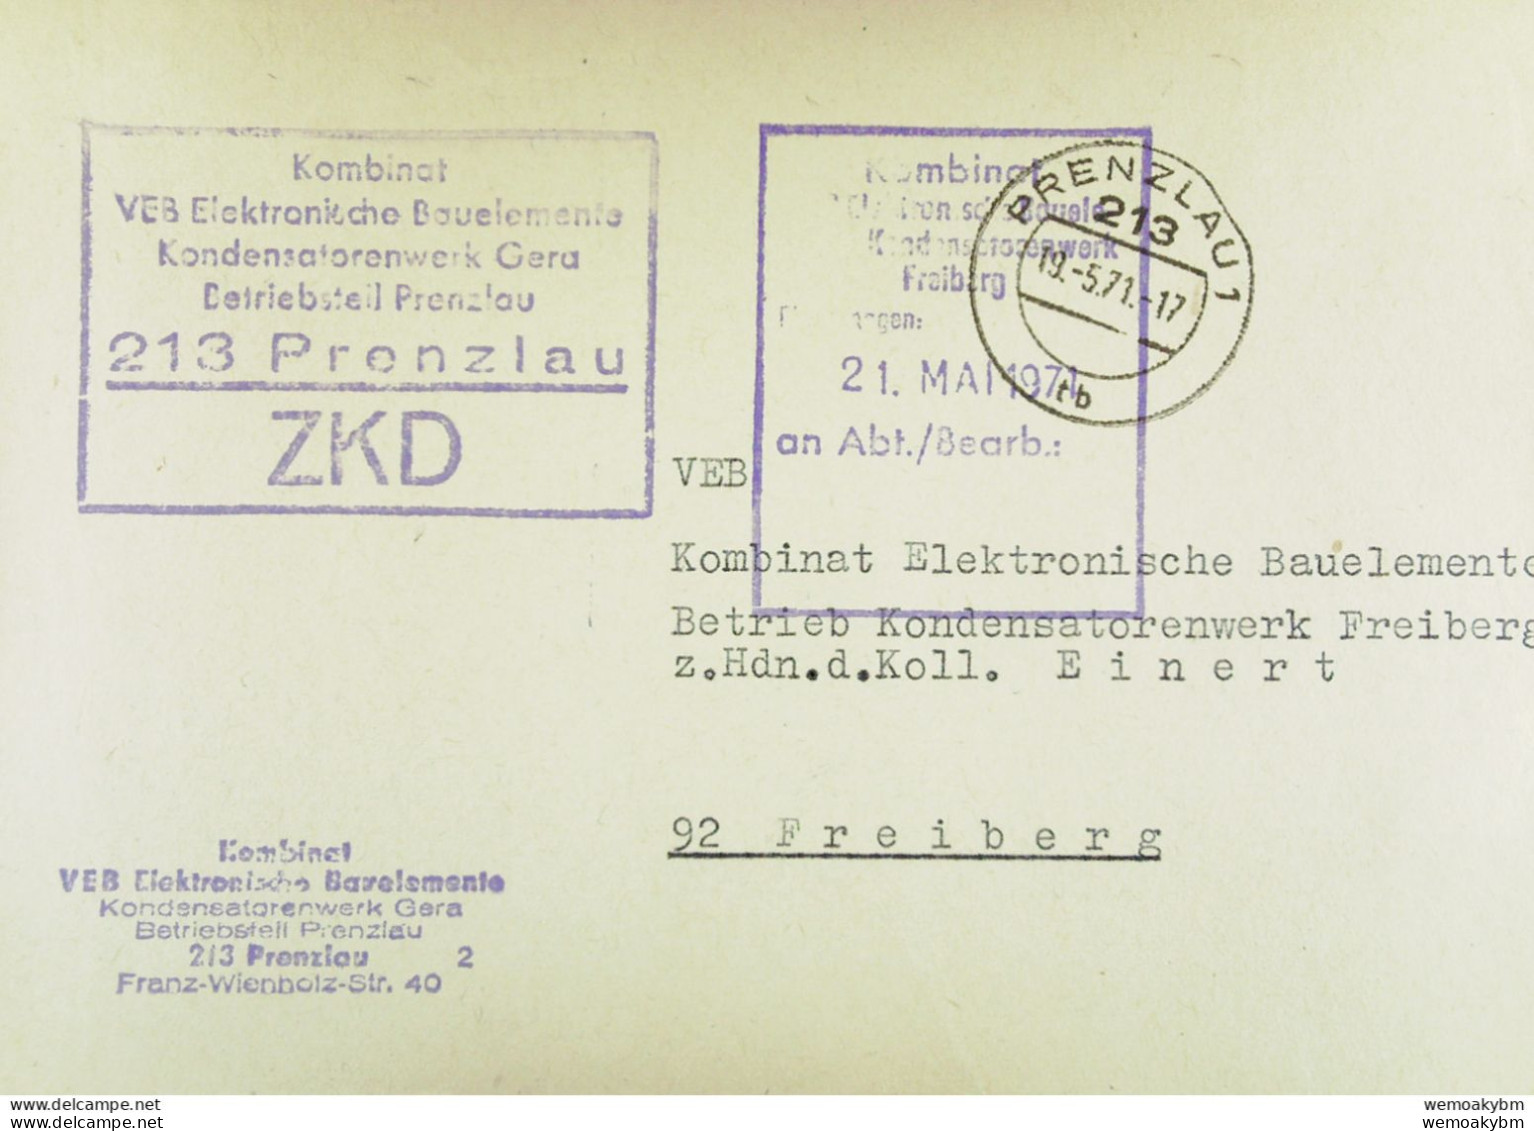 Fern-Brief Mit ZKD-Kastenstpl "Kombinat VEB Elektronische Bauelemente Kondensatorenwerk Gera BT 213 PRENZLAU" V 19.5.71 - Central Mail Service